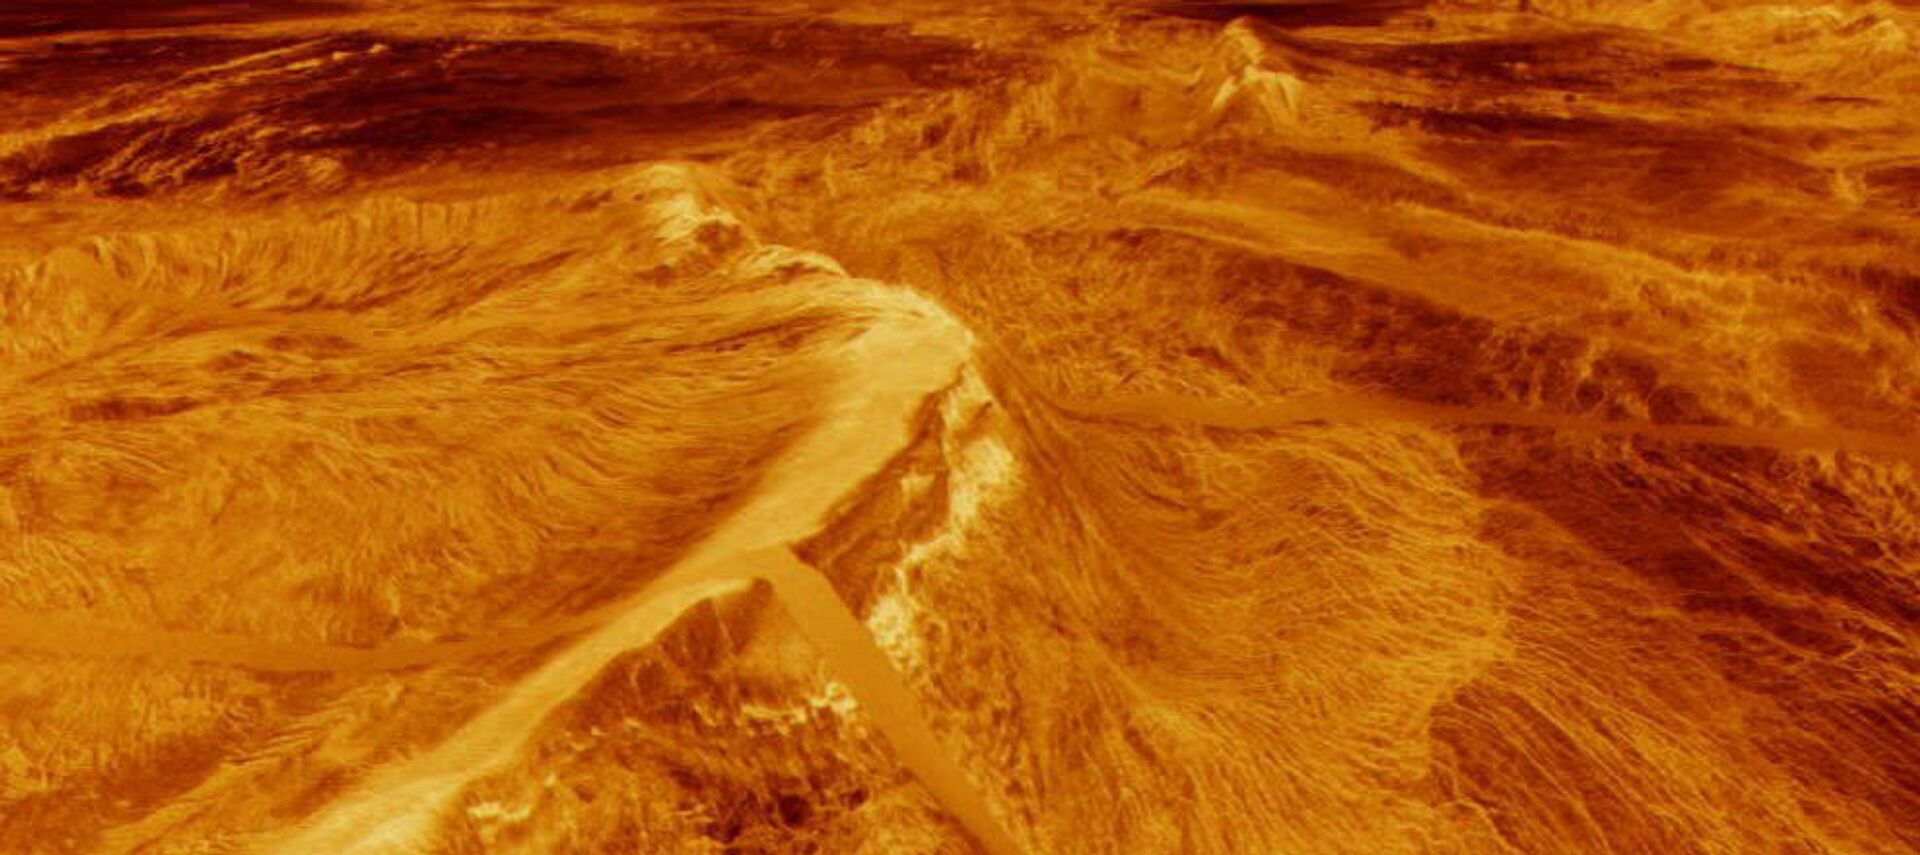 صورة تم إنشاؤها بواسطة الكمبيوتر نشرها مختبر الدفع النفاث في كاليفورنيا 11 أغسطس 1992 لتشاسما على كوكب الزهرة - سبوتنيك عربي, 1920, 03.06.2021